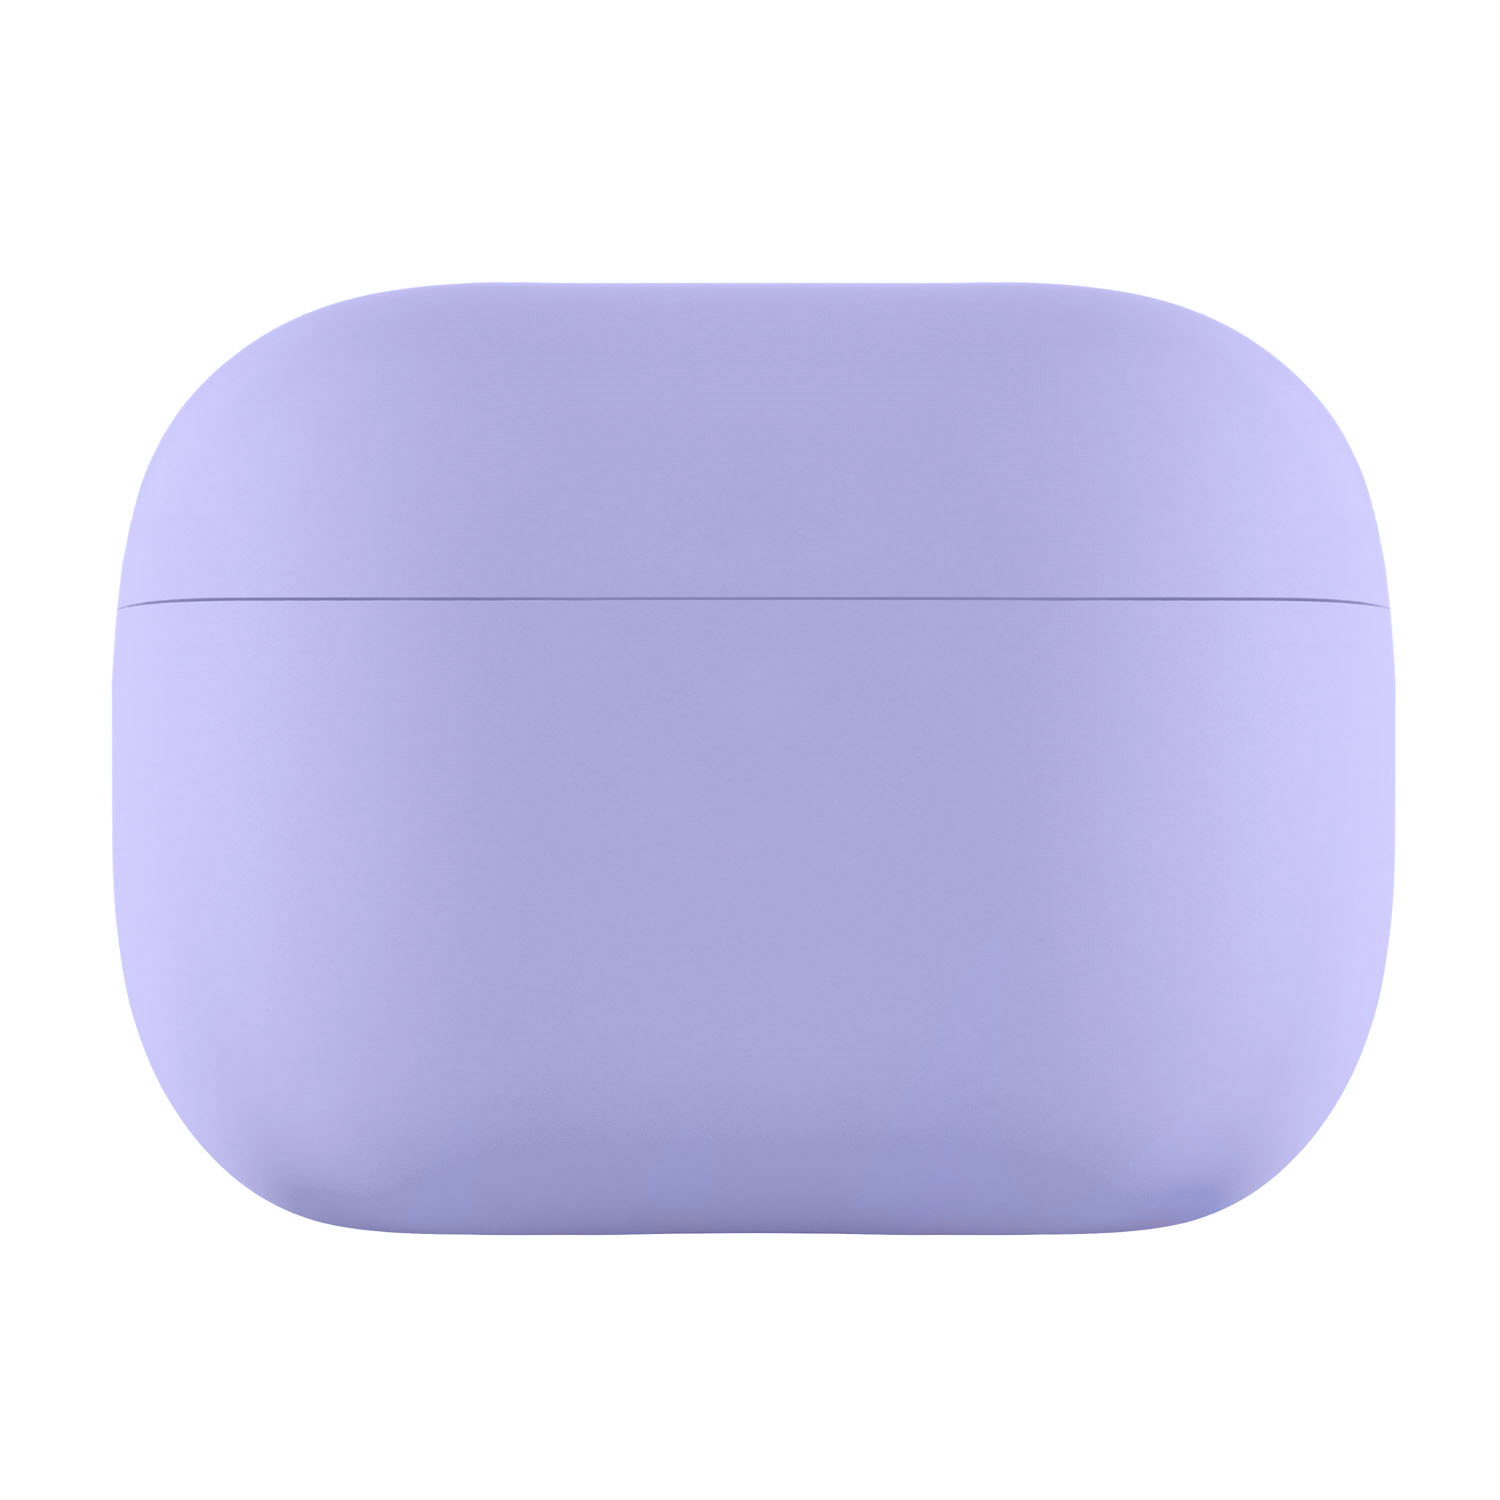 Защитный чехол AirPods Pro 2 Touch Pro Silicone Case, 1,5 мм усиленный, фиолетовый